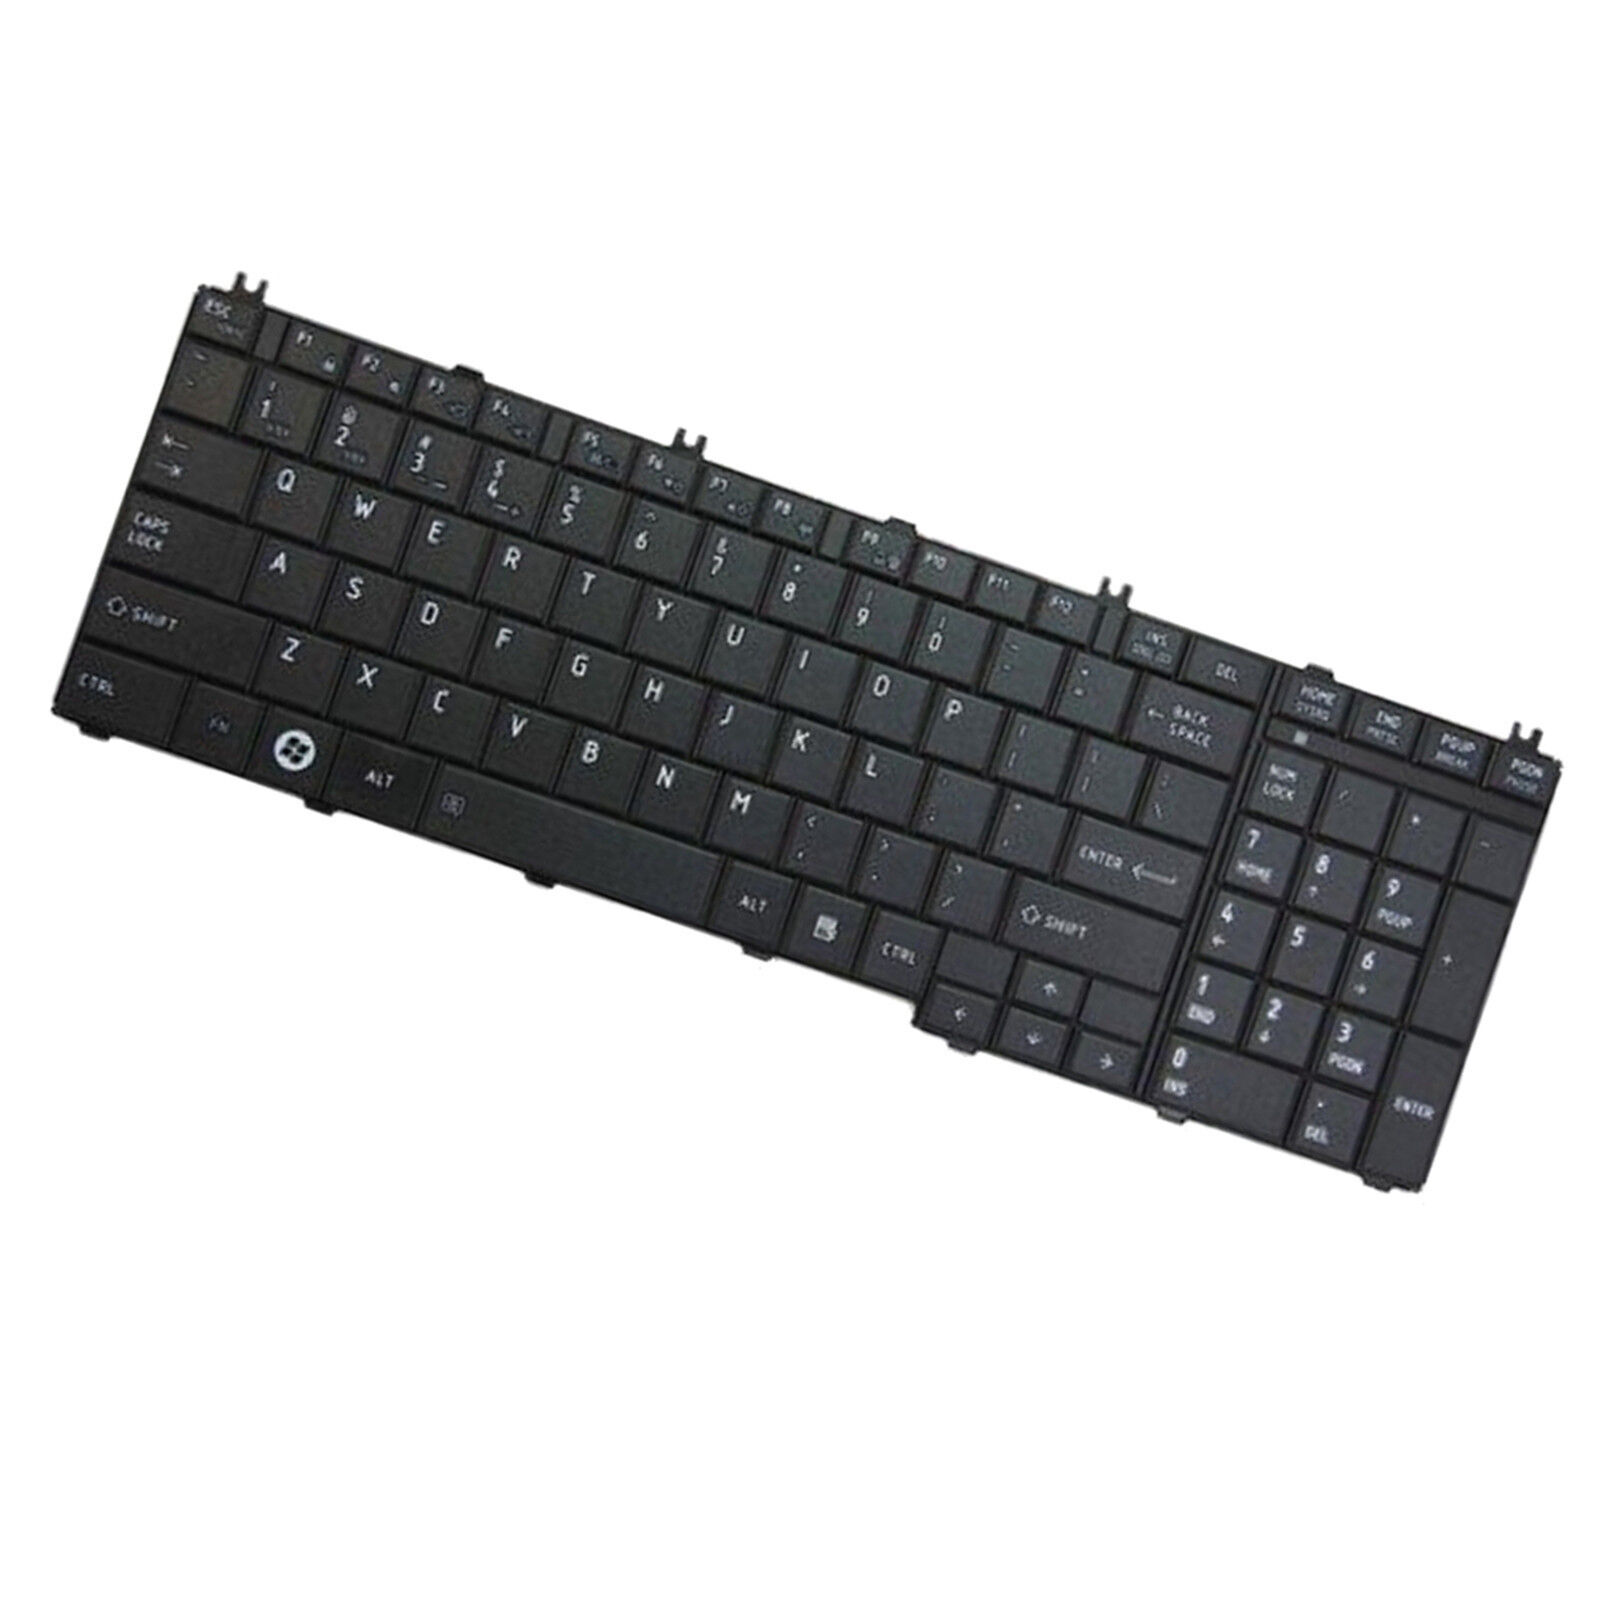 HQRP Keyboard for Toshiba L775D-S7210, L775D-S7220, L775D-S7220GR, L775D-S7222